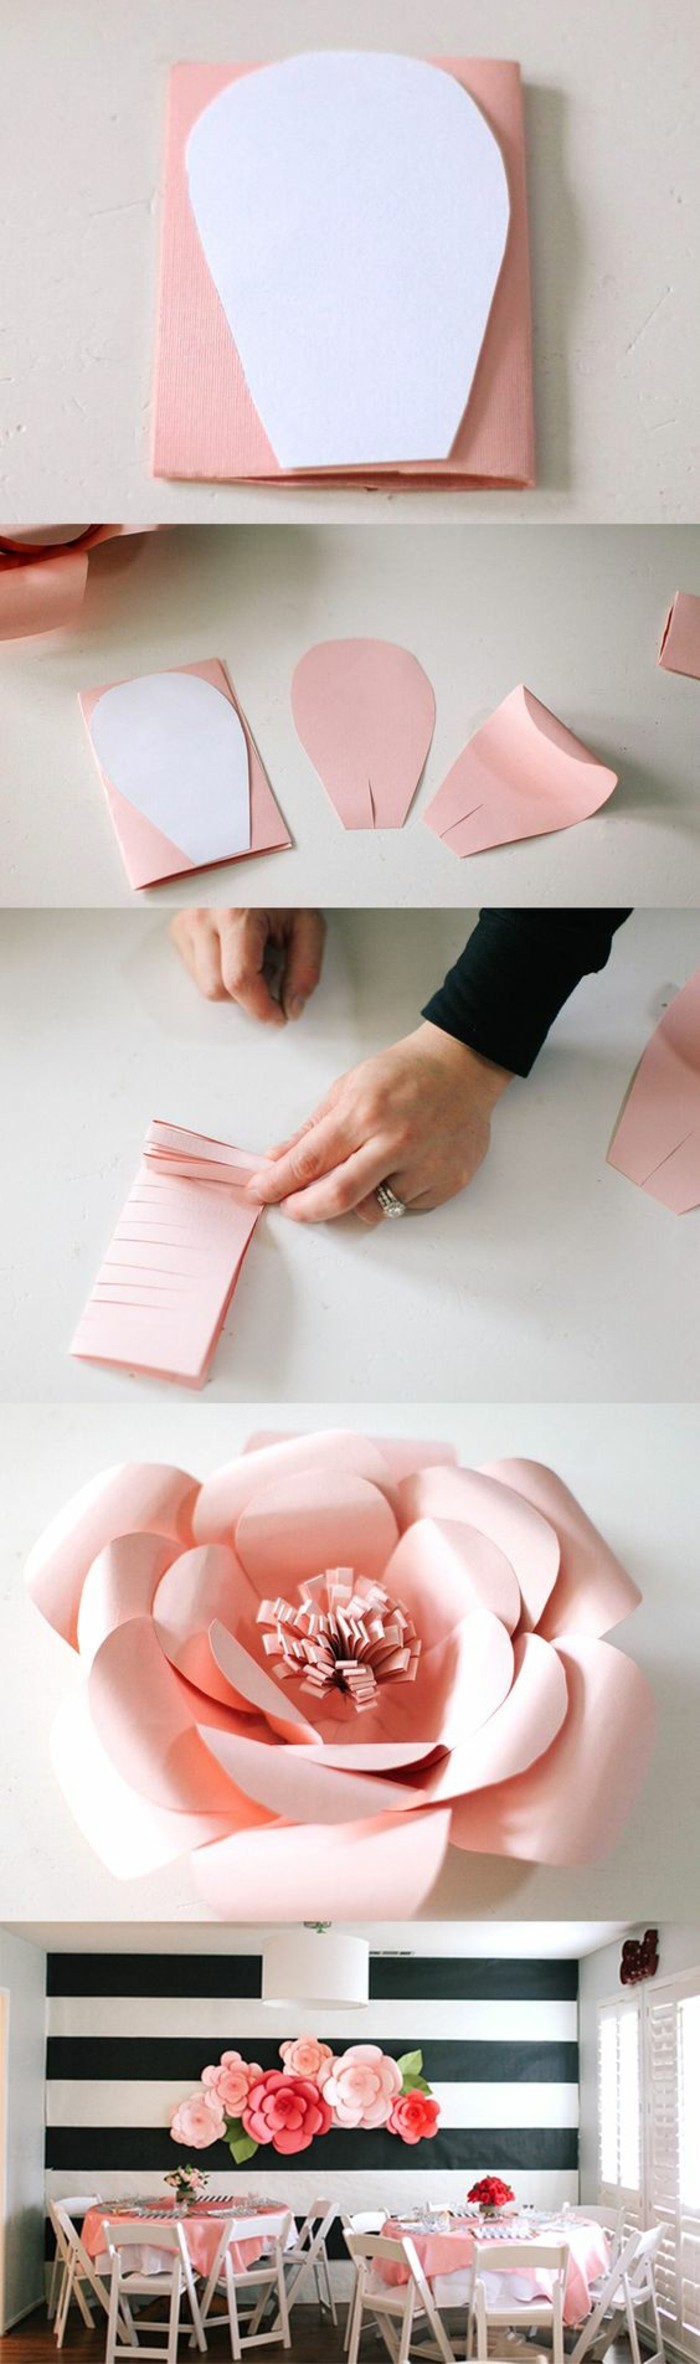 2-wanddeko-खुद लेने की fruhlingdeko-bastaln-Rosan-टिंकर बनाया papier-